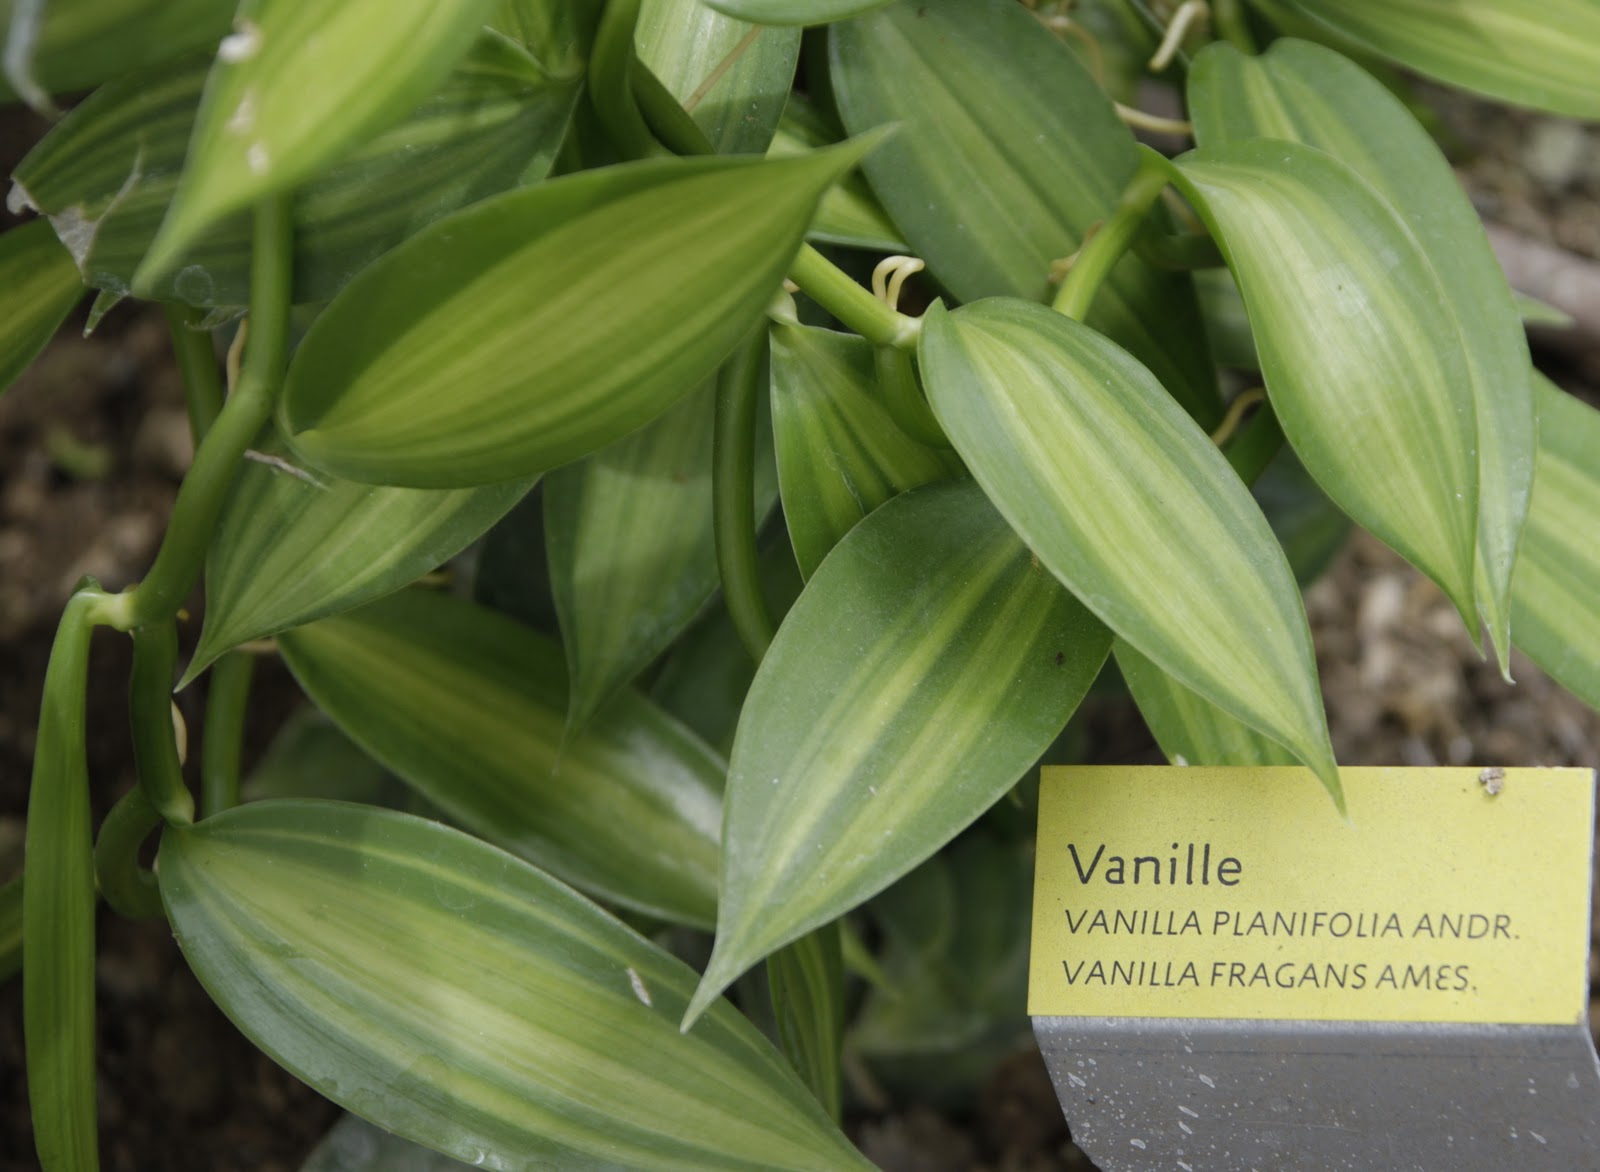 Vanilla plants. Ваниль плосколистная (Vanilla planifolia). Ваниль стручковая как растет. Myrcianthes fragans. Ванильные язычки.